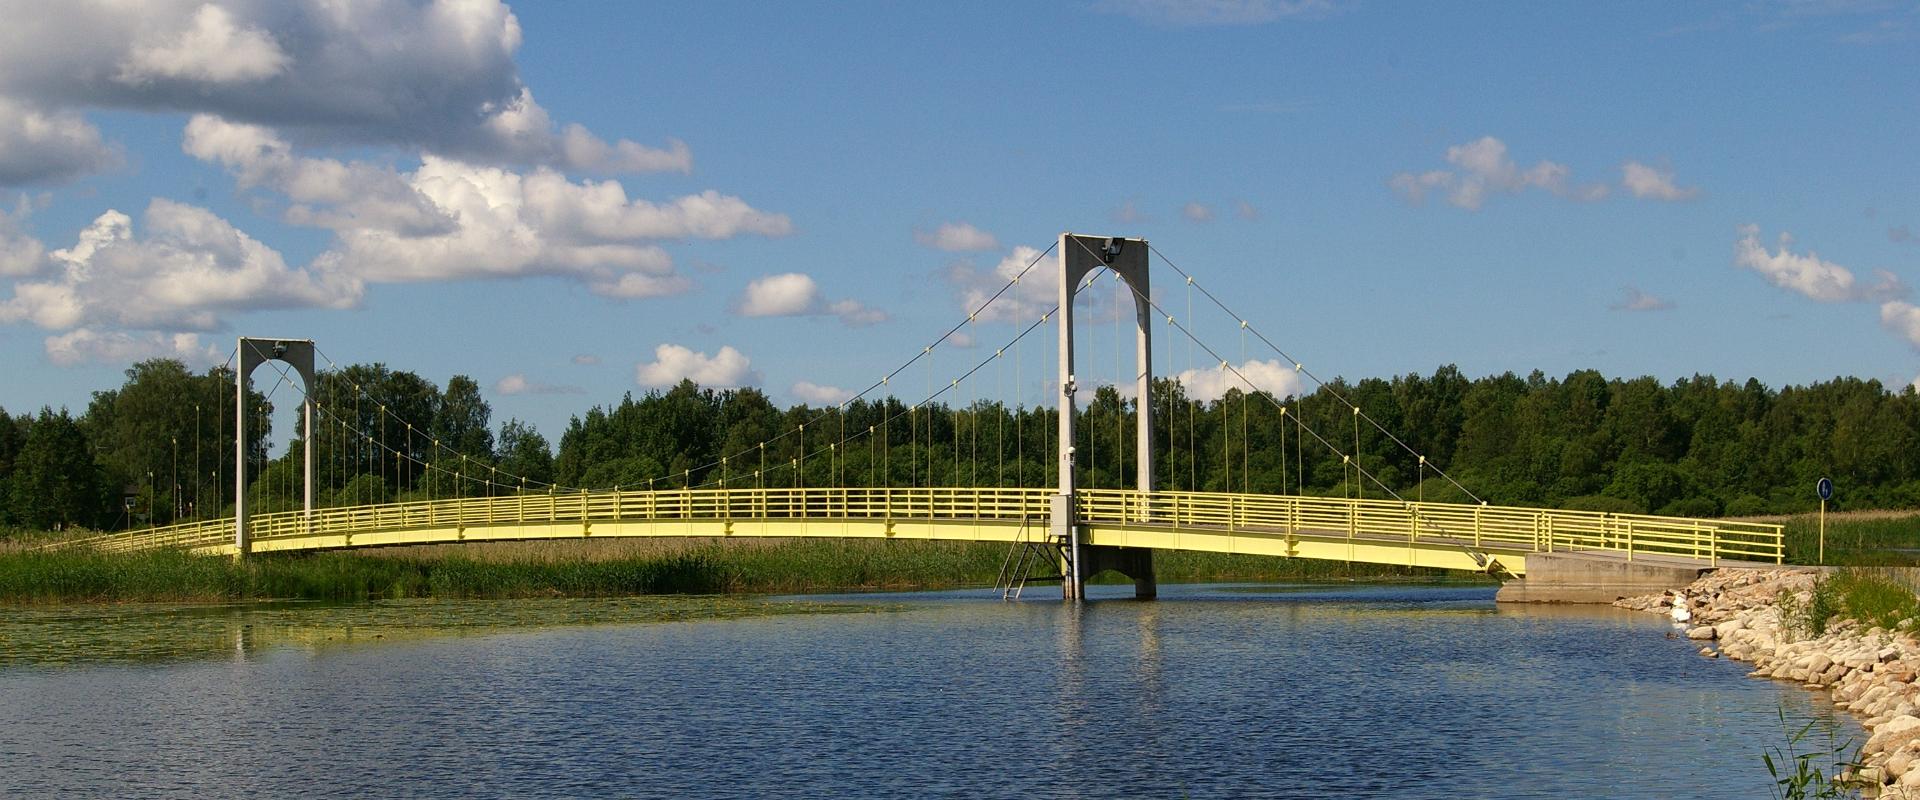 Roosisaare-Brücke